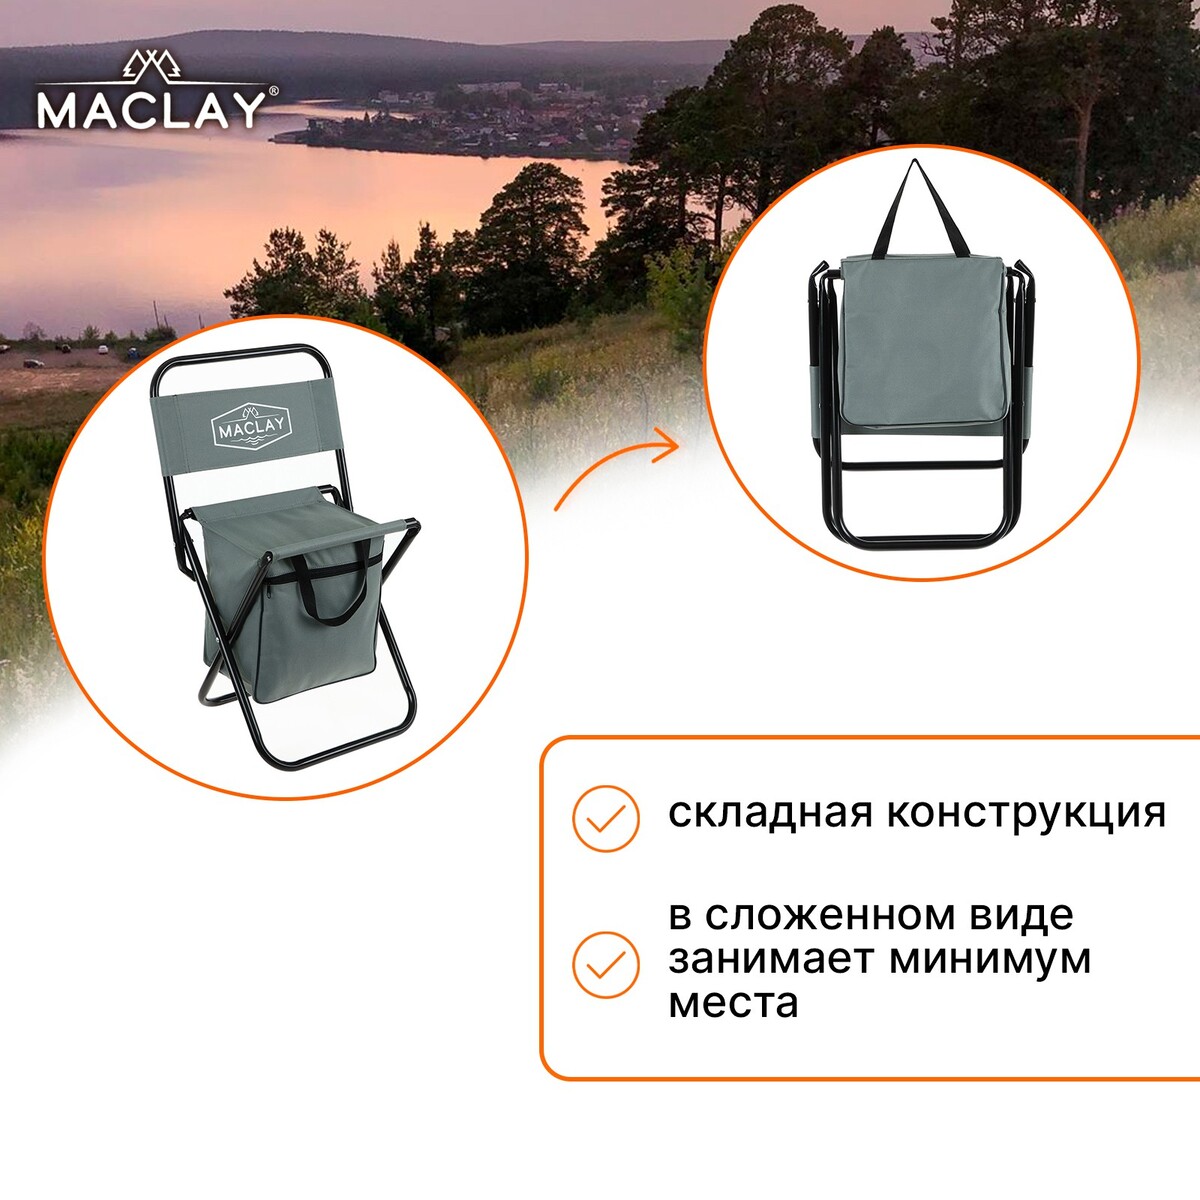 Стул туристический с сумкой 24 х 26 х 60 см, до 60 кг, цвет серый Maclay 02643755 - фото 3